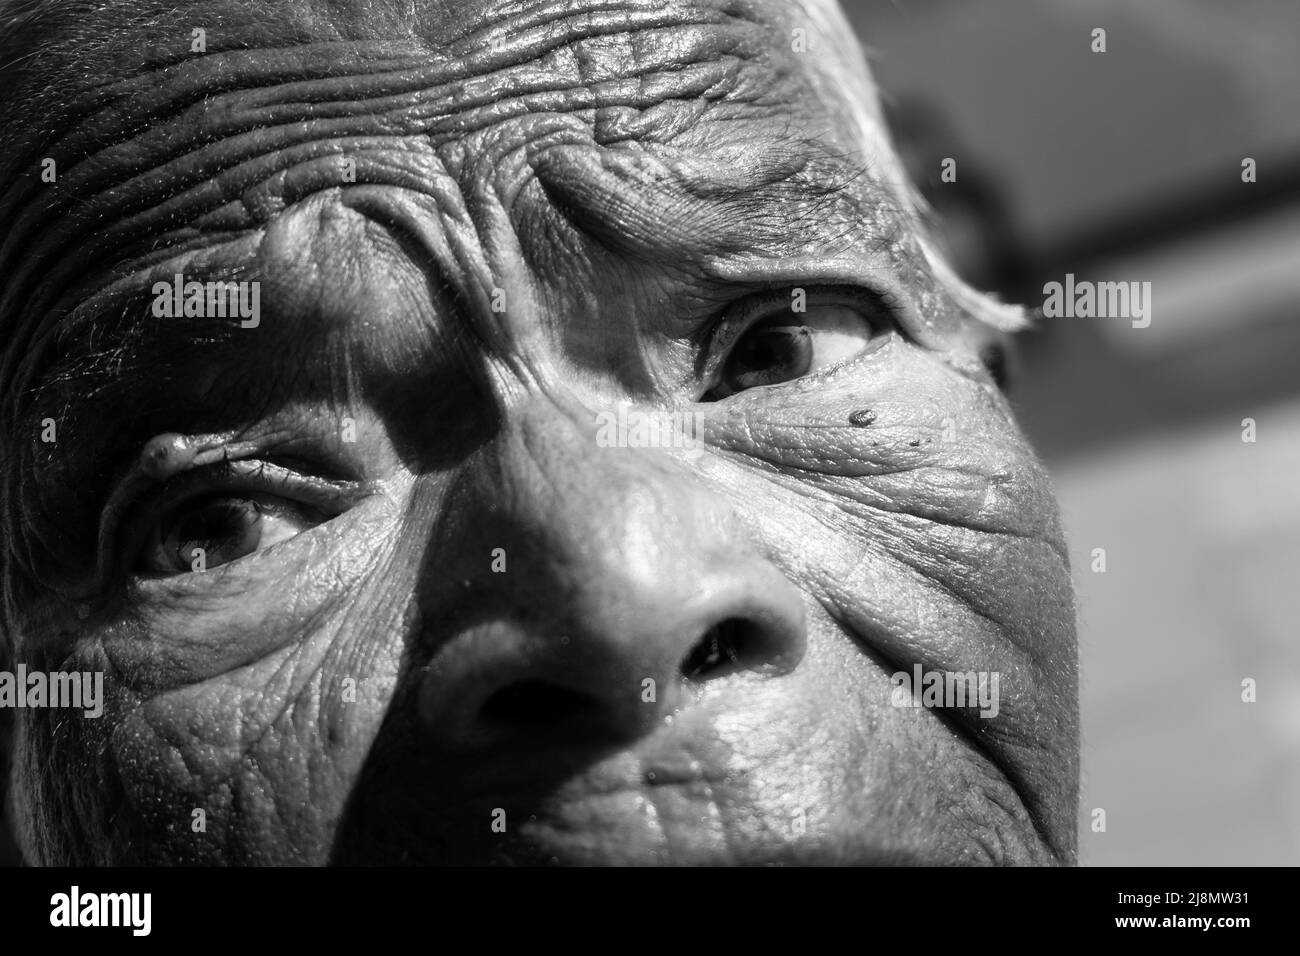 20.. oktober 2020. Dehradun, Uttarakhand, Indien. Eine Nahaufnahme der Augen einer älteren indischen Frau, die verzweifelt aussicht. Faltiges Gesicht Stockfoto